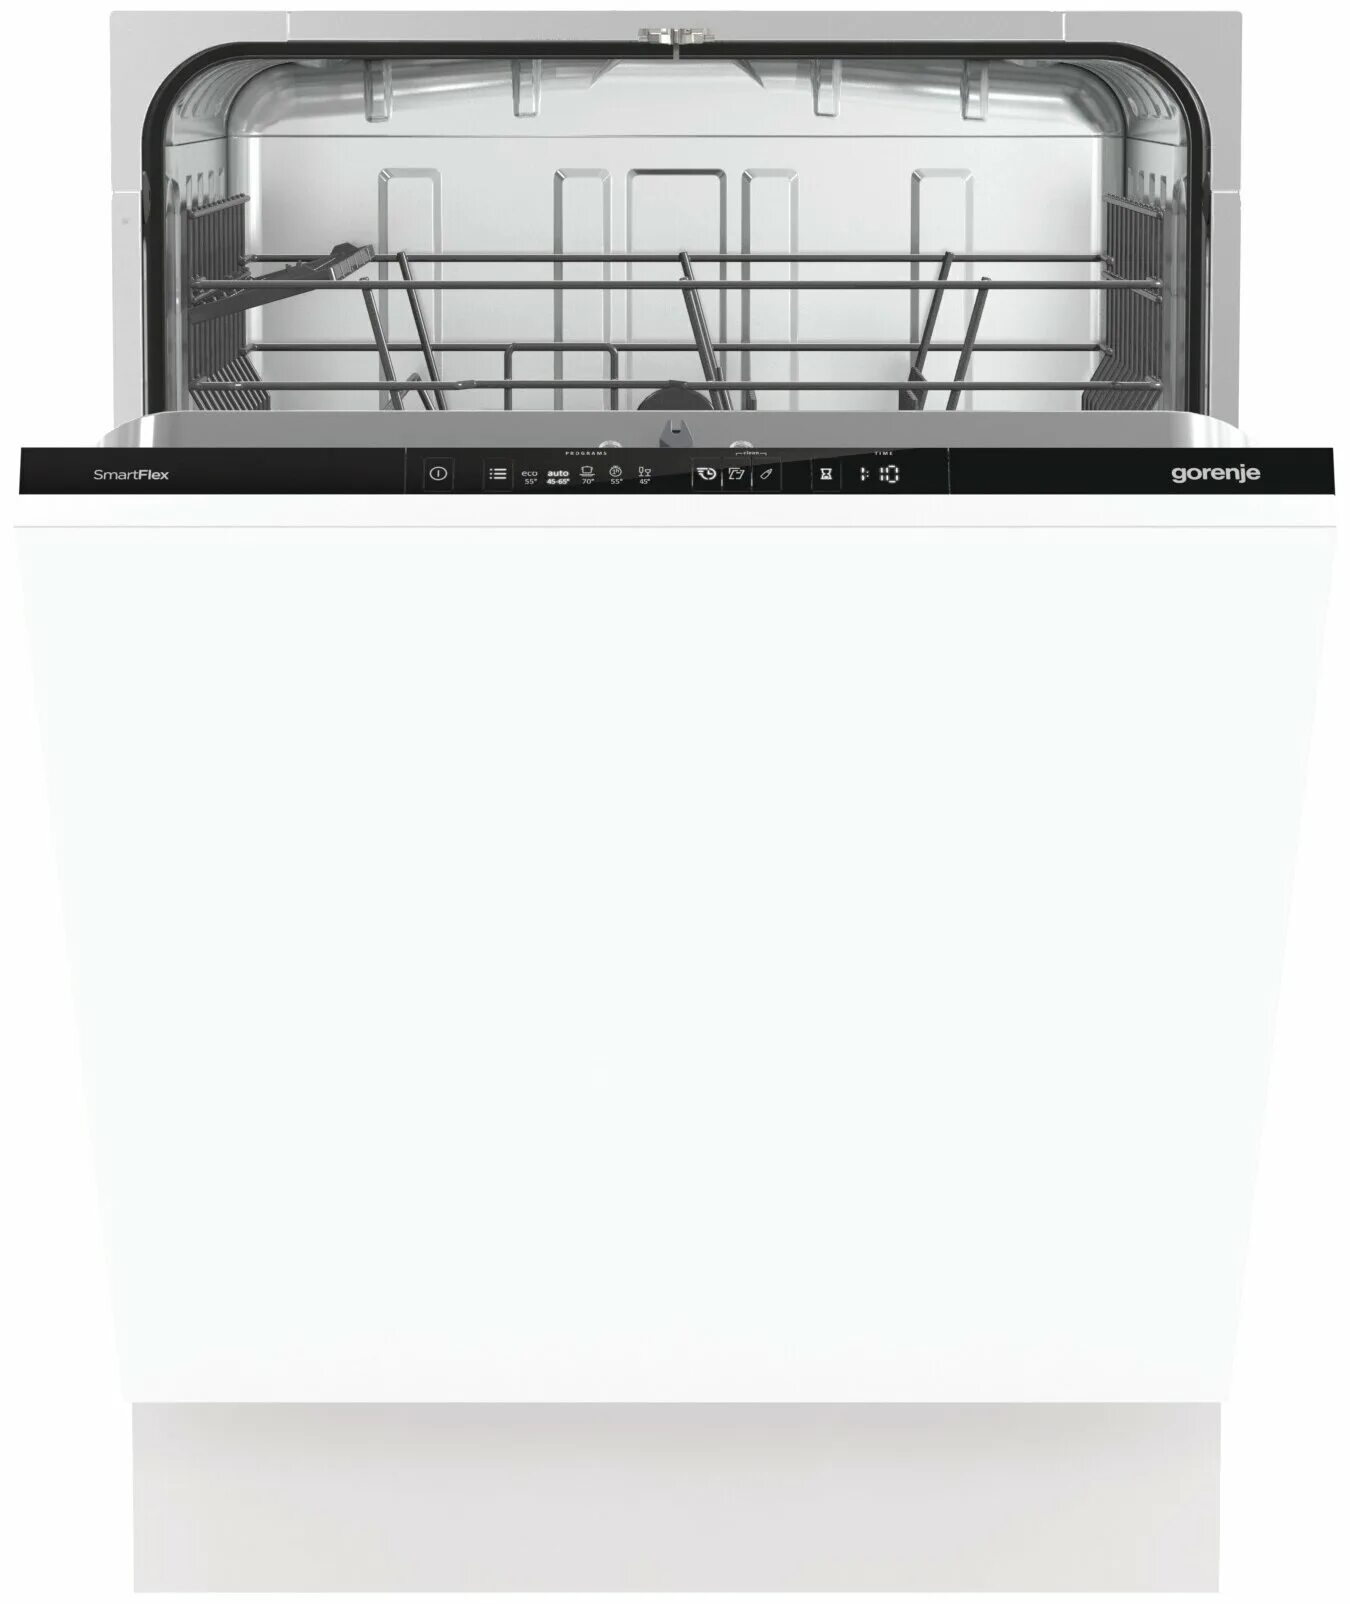 Посудомоечная горение отзывы. Посудомоечная машина Gorenje gv672c62. Встраиваемая посудомоечная машина 60 см Gorenje gv661d60. Машина посудомоечная Gorenje GV 661d60. Gorenje gv620e10.